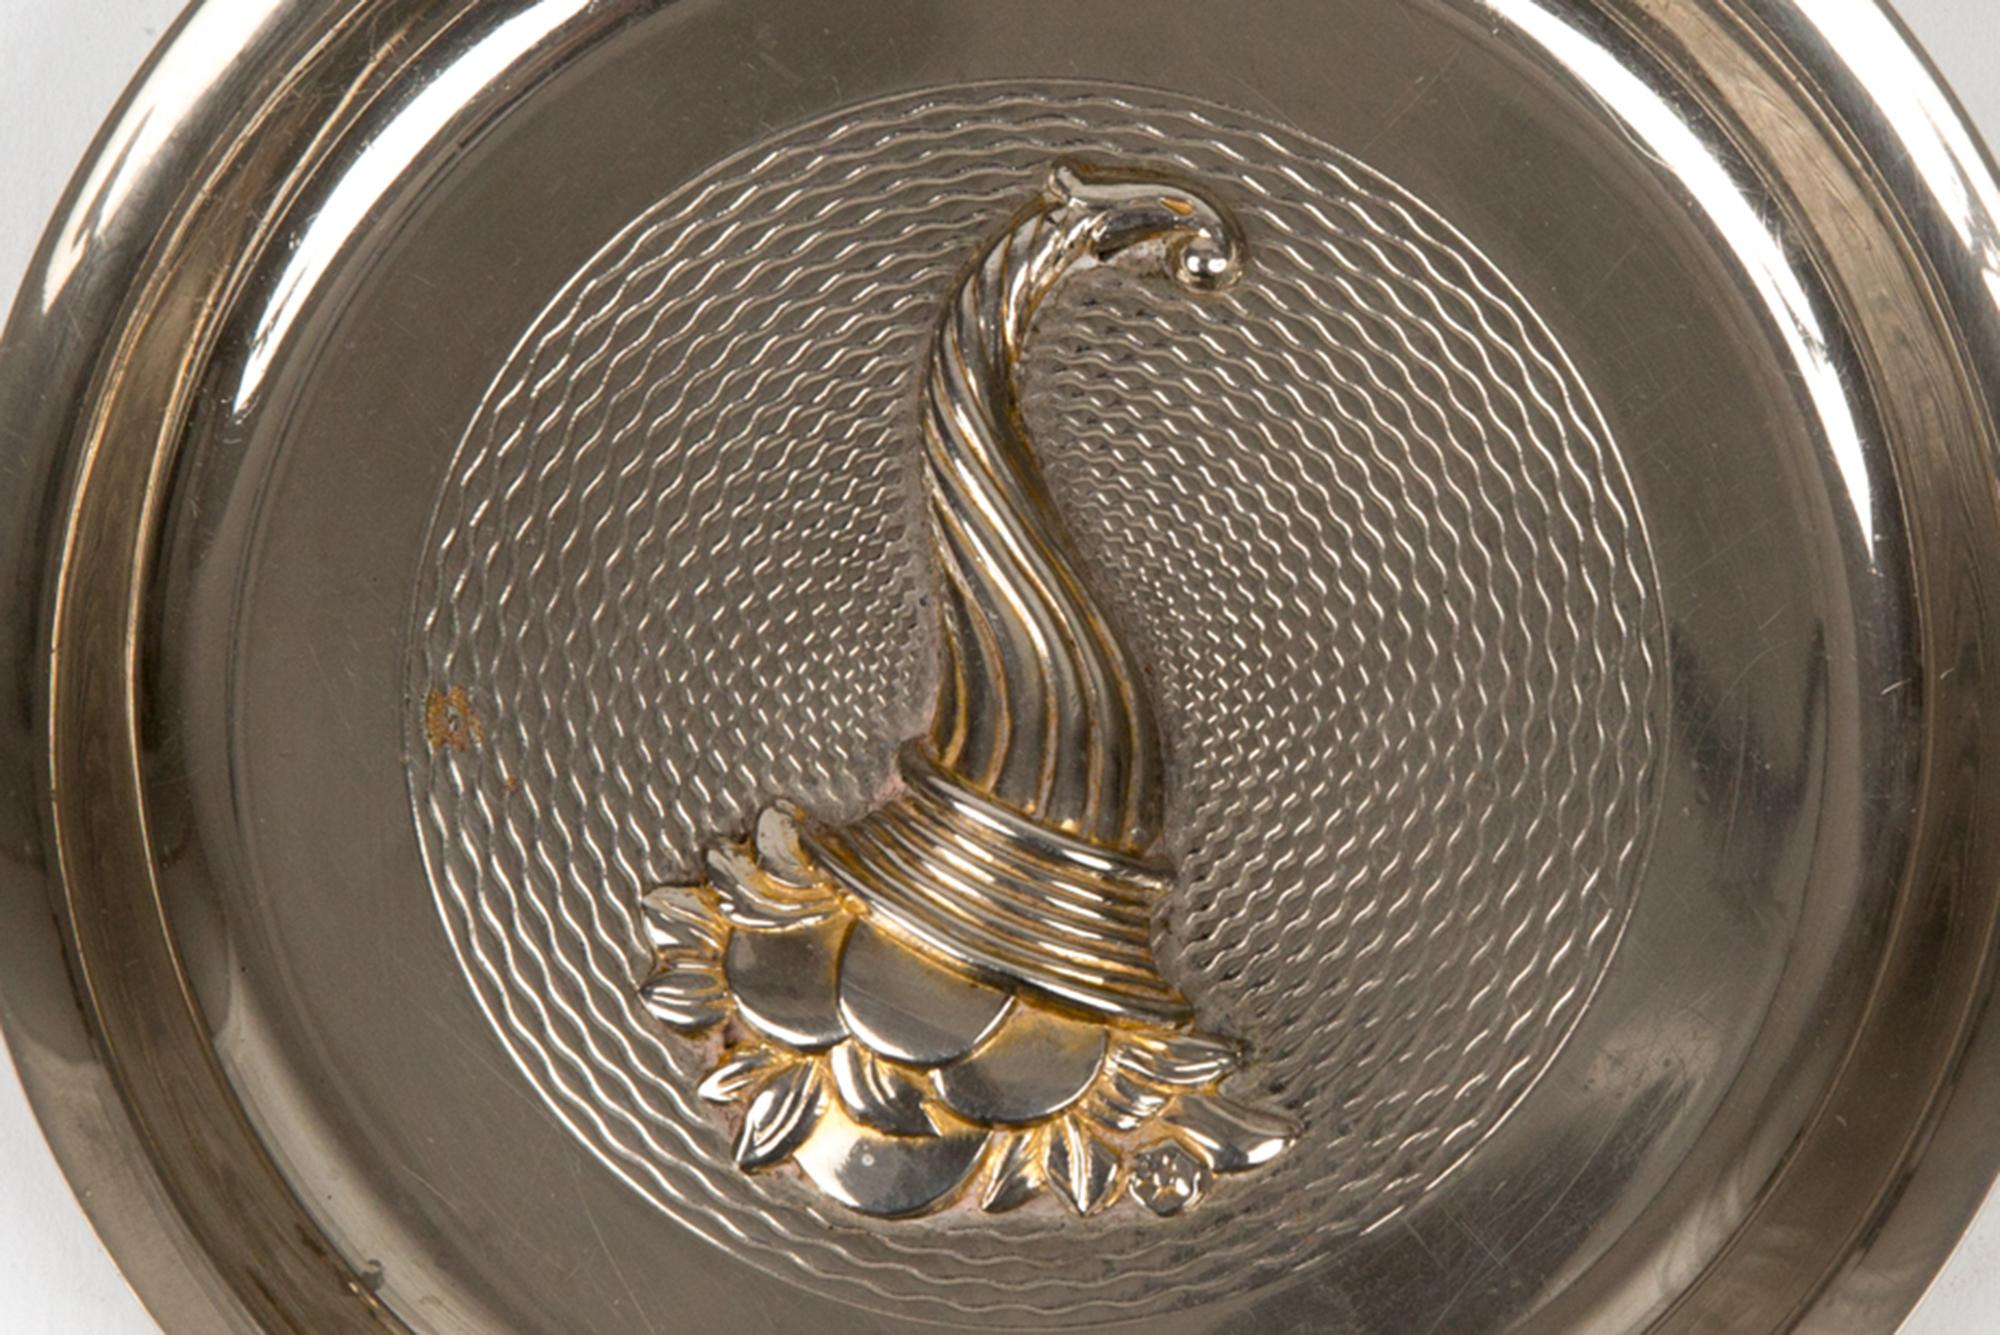 Hermès Silber dekorative Veranstalter mit einem Füllhorn, Corne d'Abondance in seiner Mitte, eine runde Form, zurück entsteint Leder Hermes Signatur auf der Rückseite fehlt. 
Circa 1970er Jahre 
In gutem Vintage-Zustand. 
Durchmesser: 4,7 Zoll (12